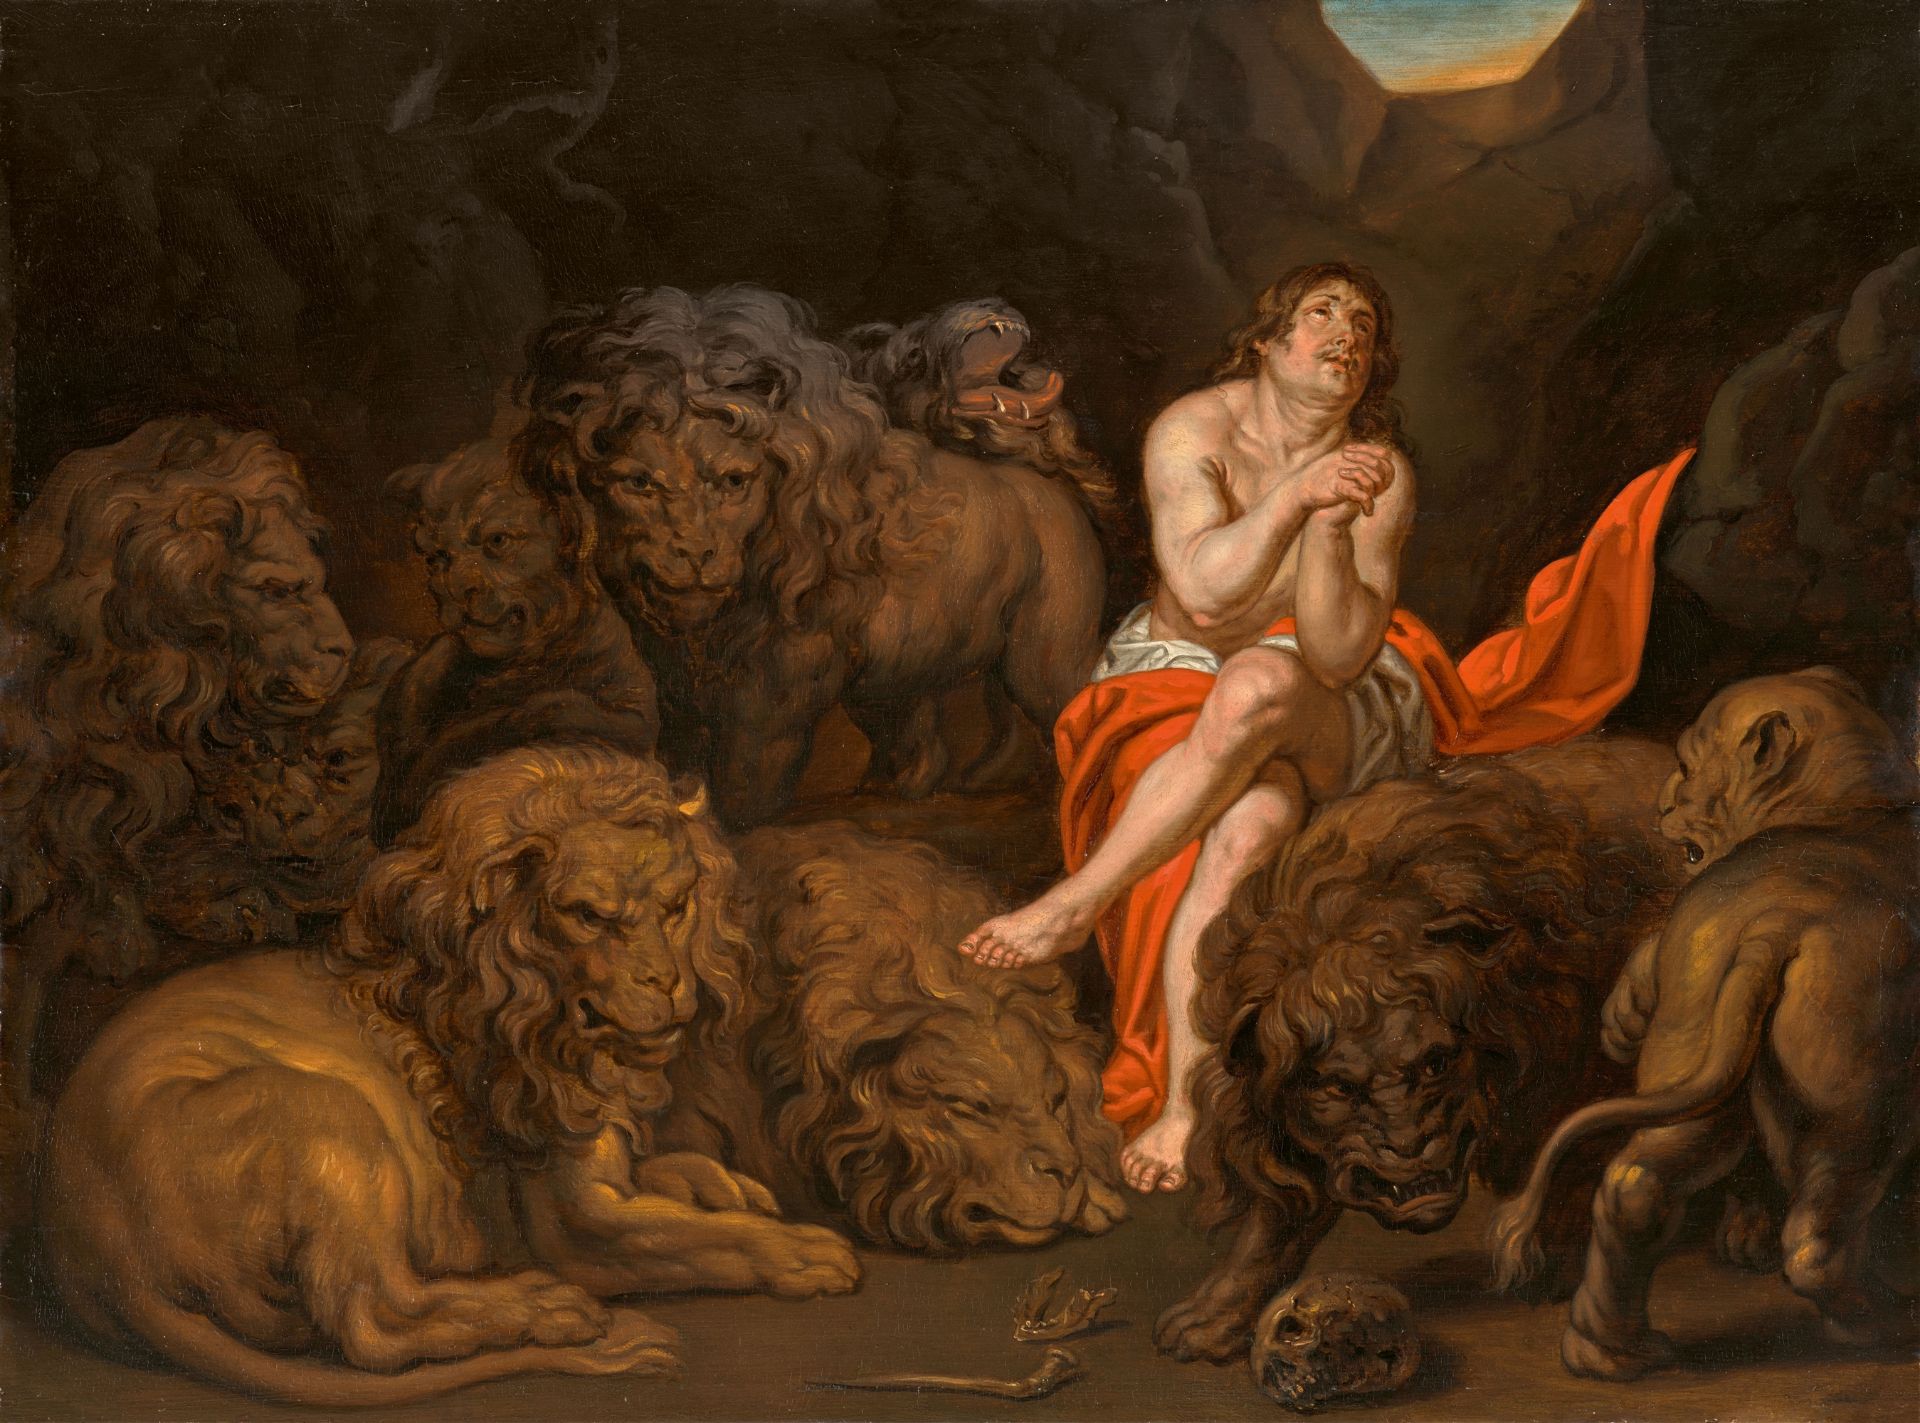 Peter Paul Rubens, nach, Daniel in der Löwengrube